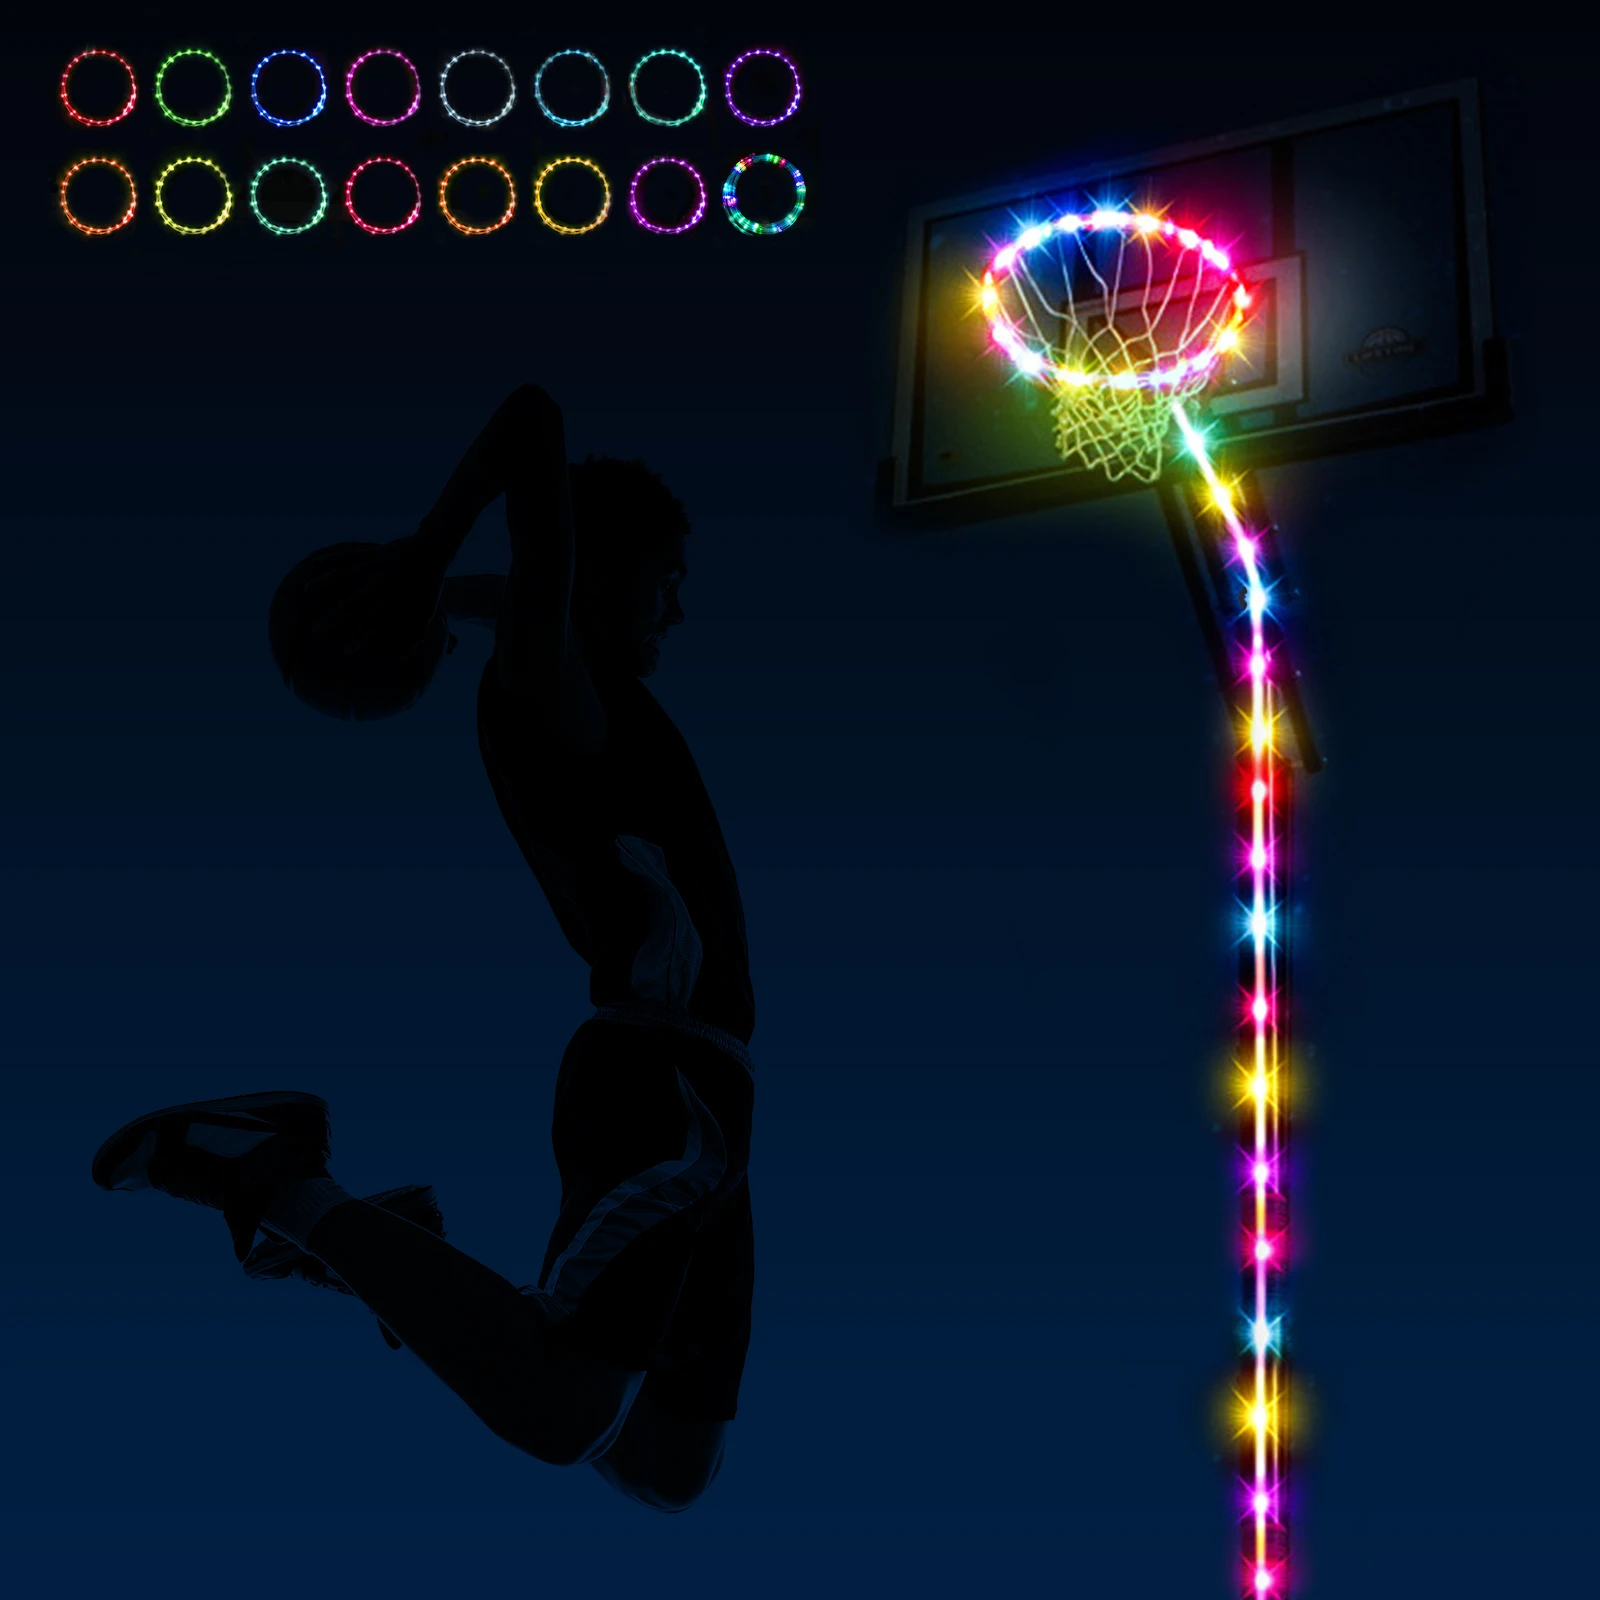 Фонари для баскетбольного кольца, дистанционное управление, 16 цветов меняются самостоятельно, водонепроницаемые, супер яркие, для игры ночью на открытом воздухе